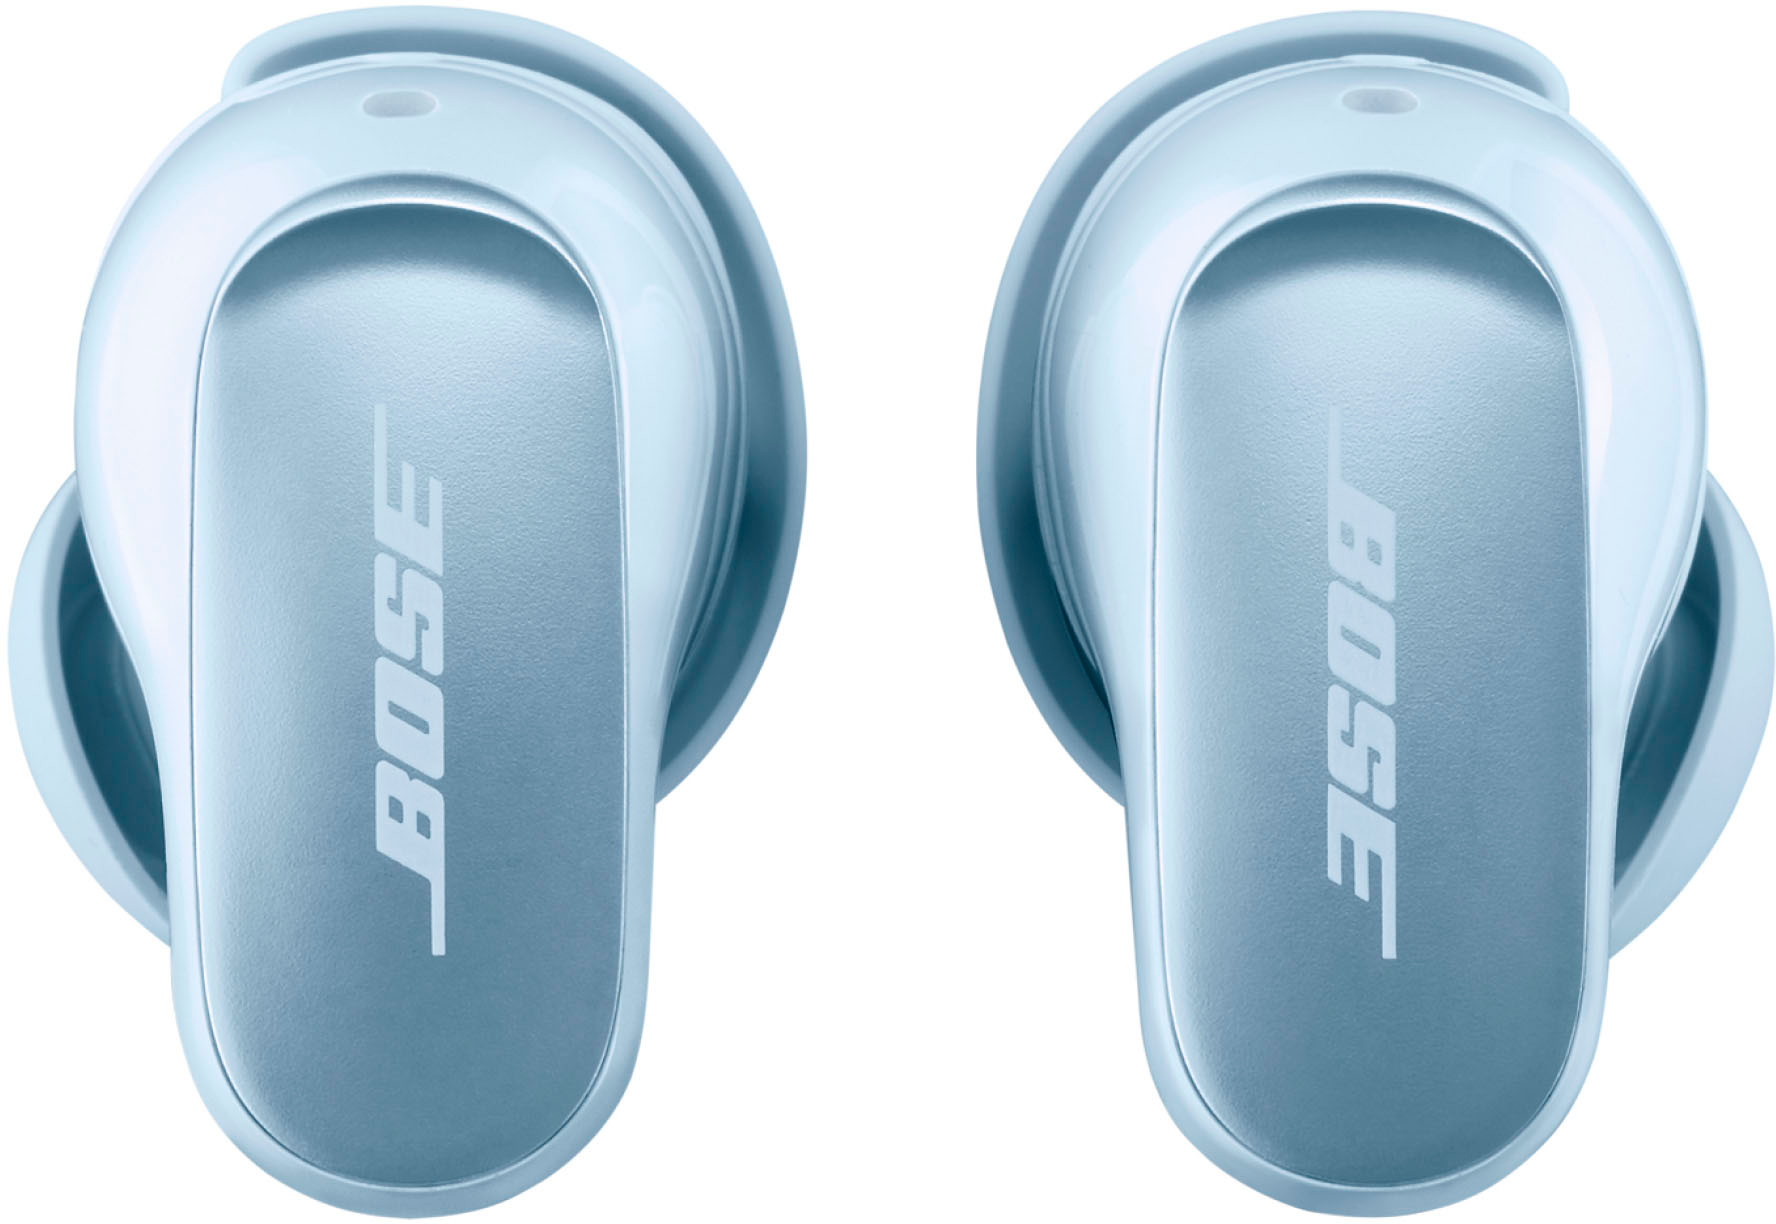 Bose QuietComfort Ultra True Wireless Noise Cancelling In-Ear Earbuds  Moonstone Blue 882826-0050 - Best Buy